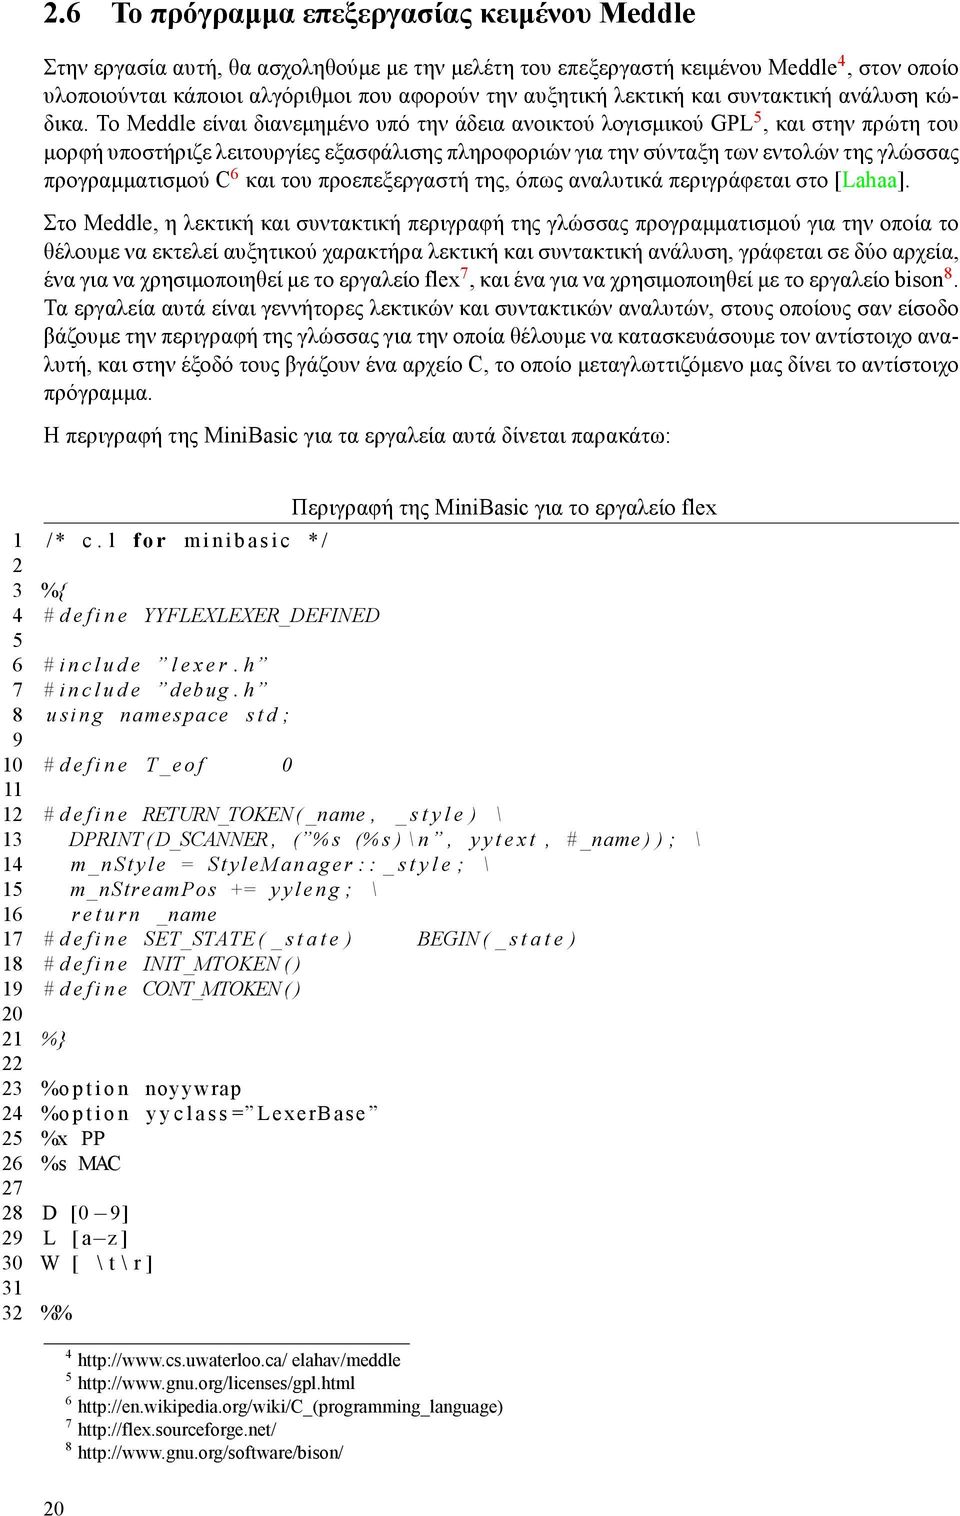 Το Meddle είναι διανεμημένο υπό την άδεια ανοικτού λογισμικού GPL 5, και στην πρώτη του μορφή υποστήριζε λειτουργίες εξασφάλισης πληροφοριών για την σύνταξη των εντολών της γλώσσας προγραμματισμού C